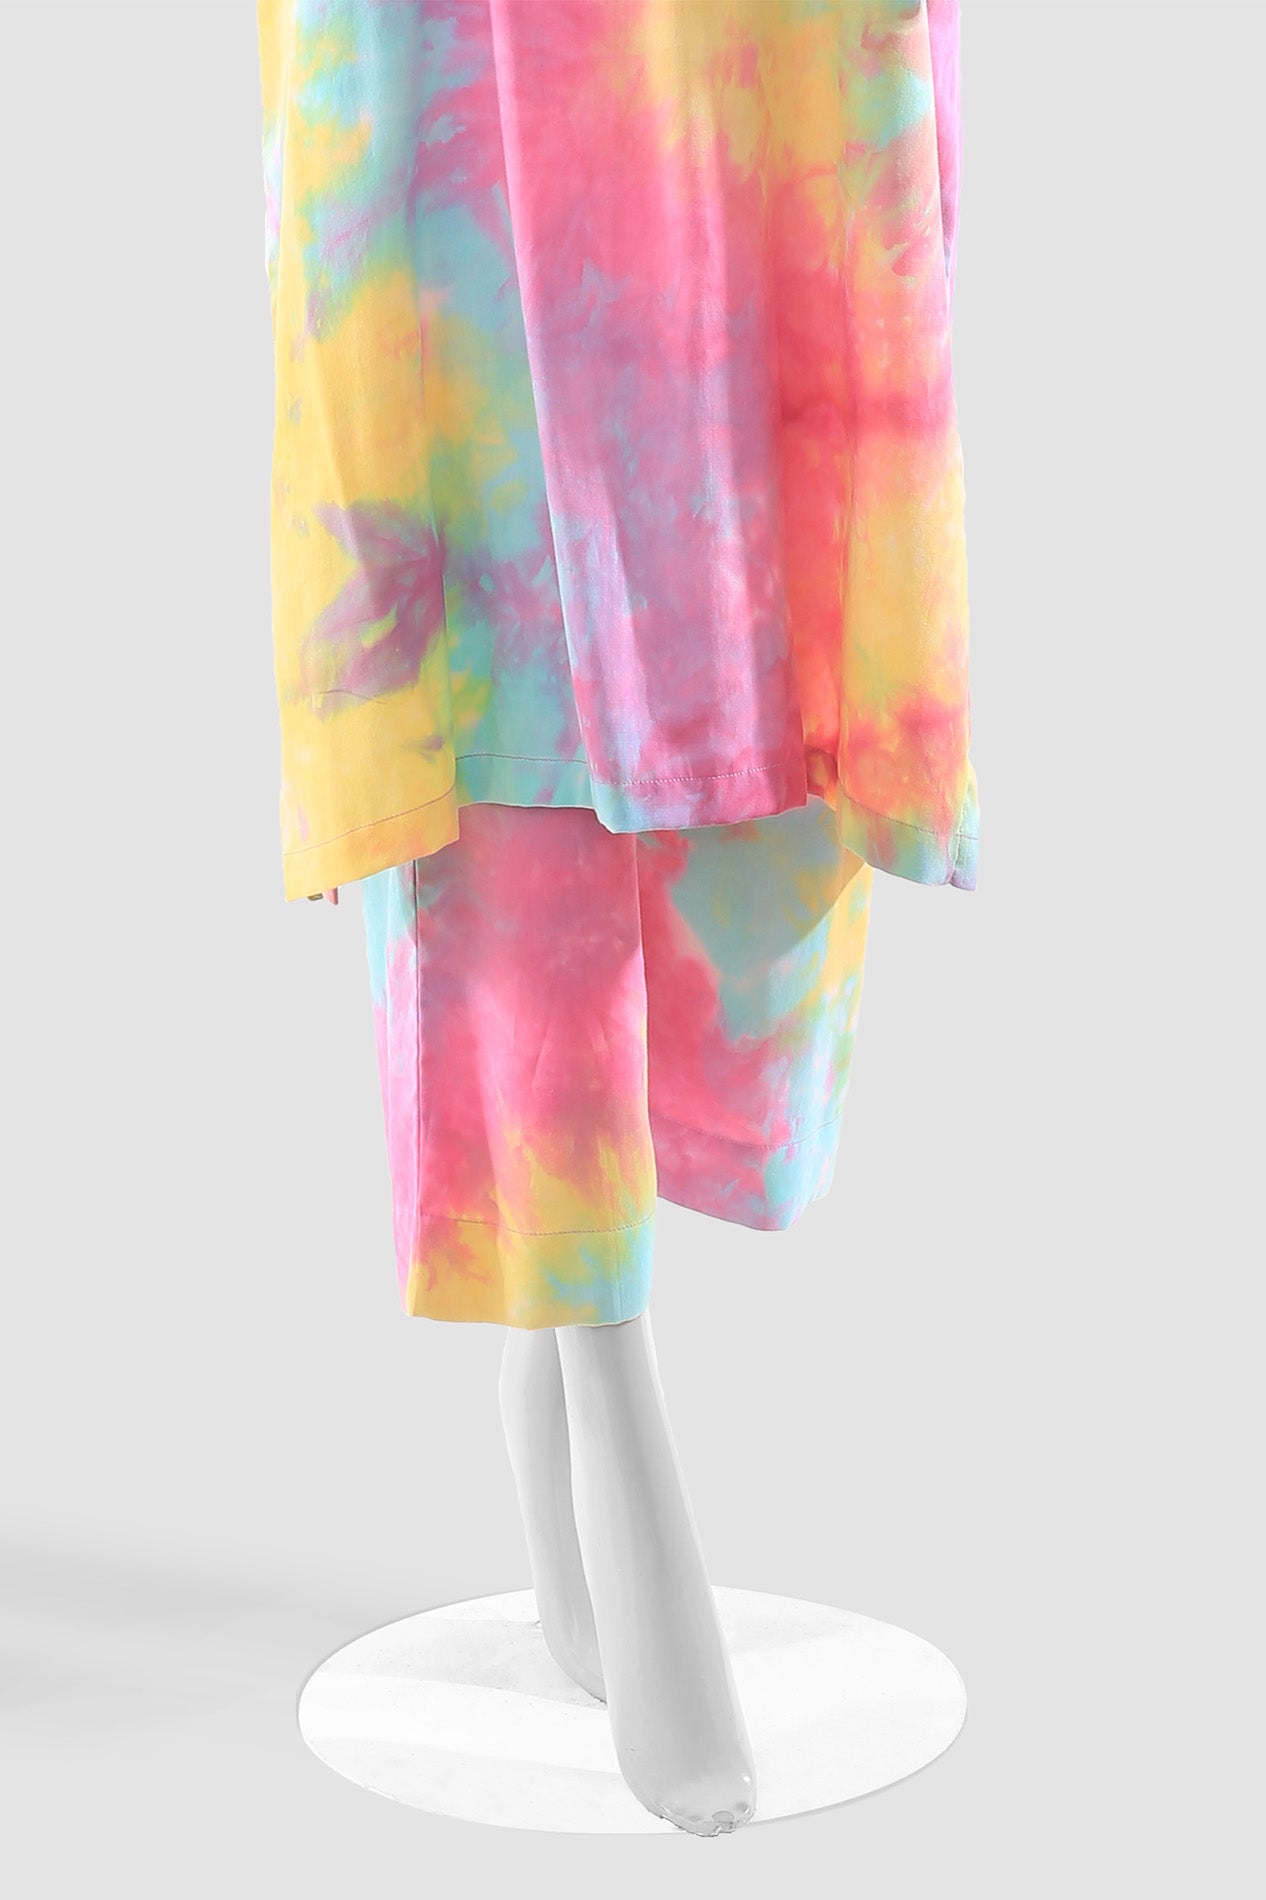 Tie & Dye Radiance Two-Piece Set - Pinkish, Purple, Yellow, and Cyan - Women's Fashion